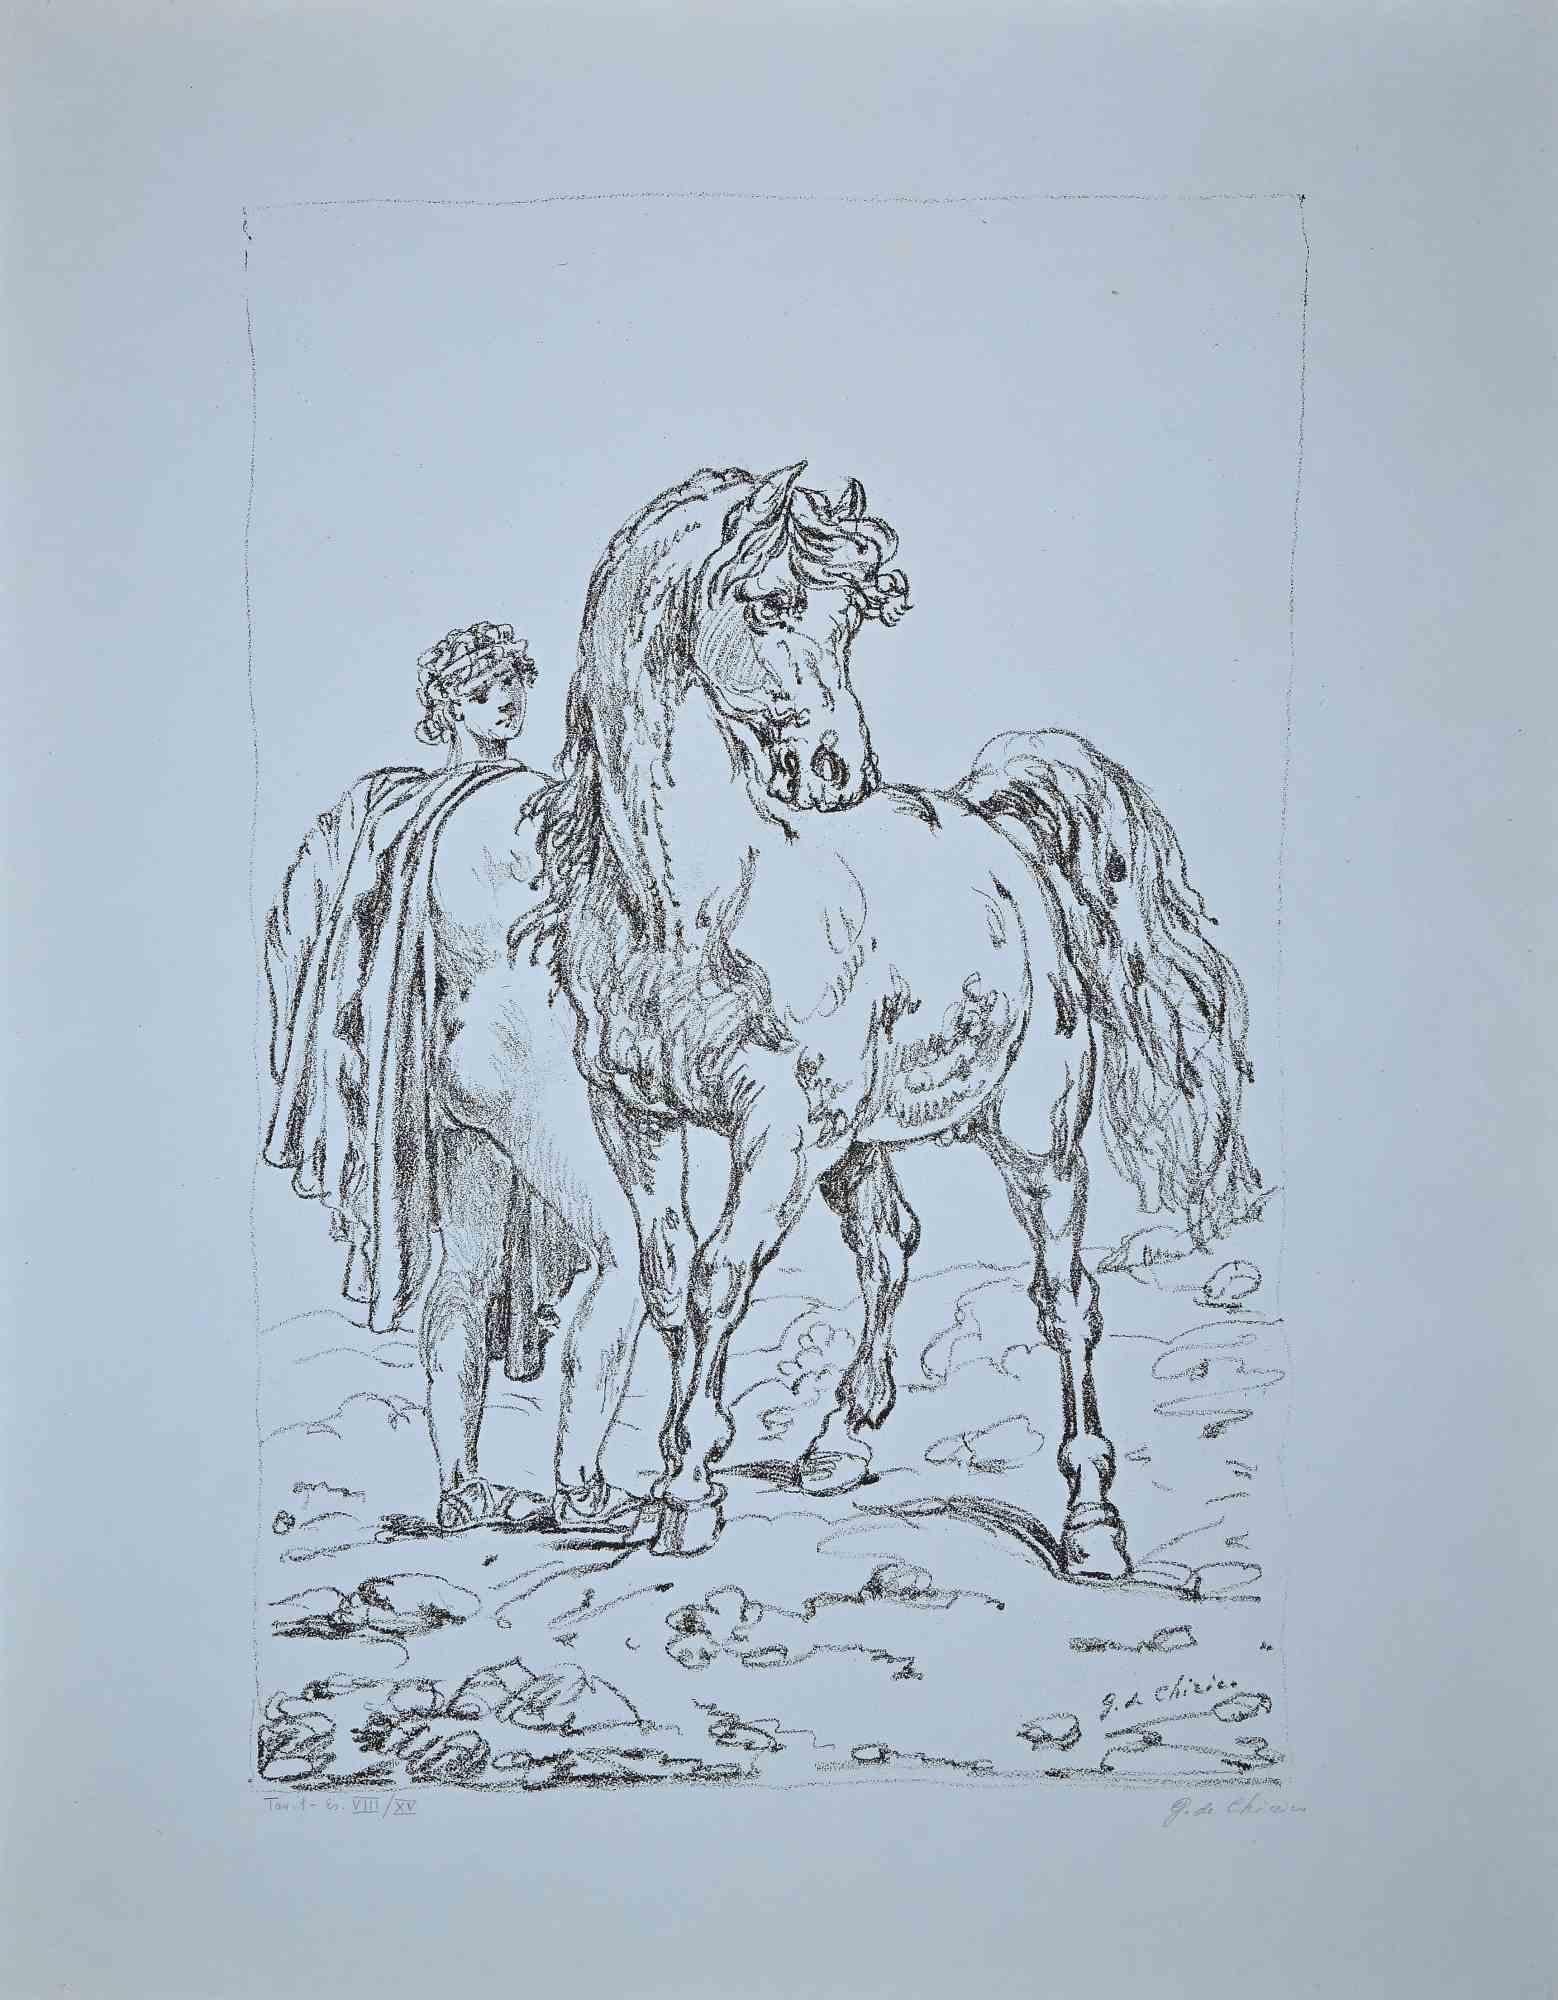 Castore est une œuvre d'art en noir et blanc réalisée par Giorgio De Chirico dans la moitié du XXe siècle. Rare spécimen sur papier bleu clair.

Lithographie en noir et blanc.

Signé à la main par l'artiste au crayon.

Signé par l'artiste en bas à